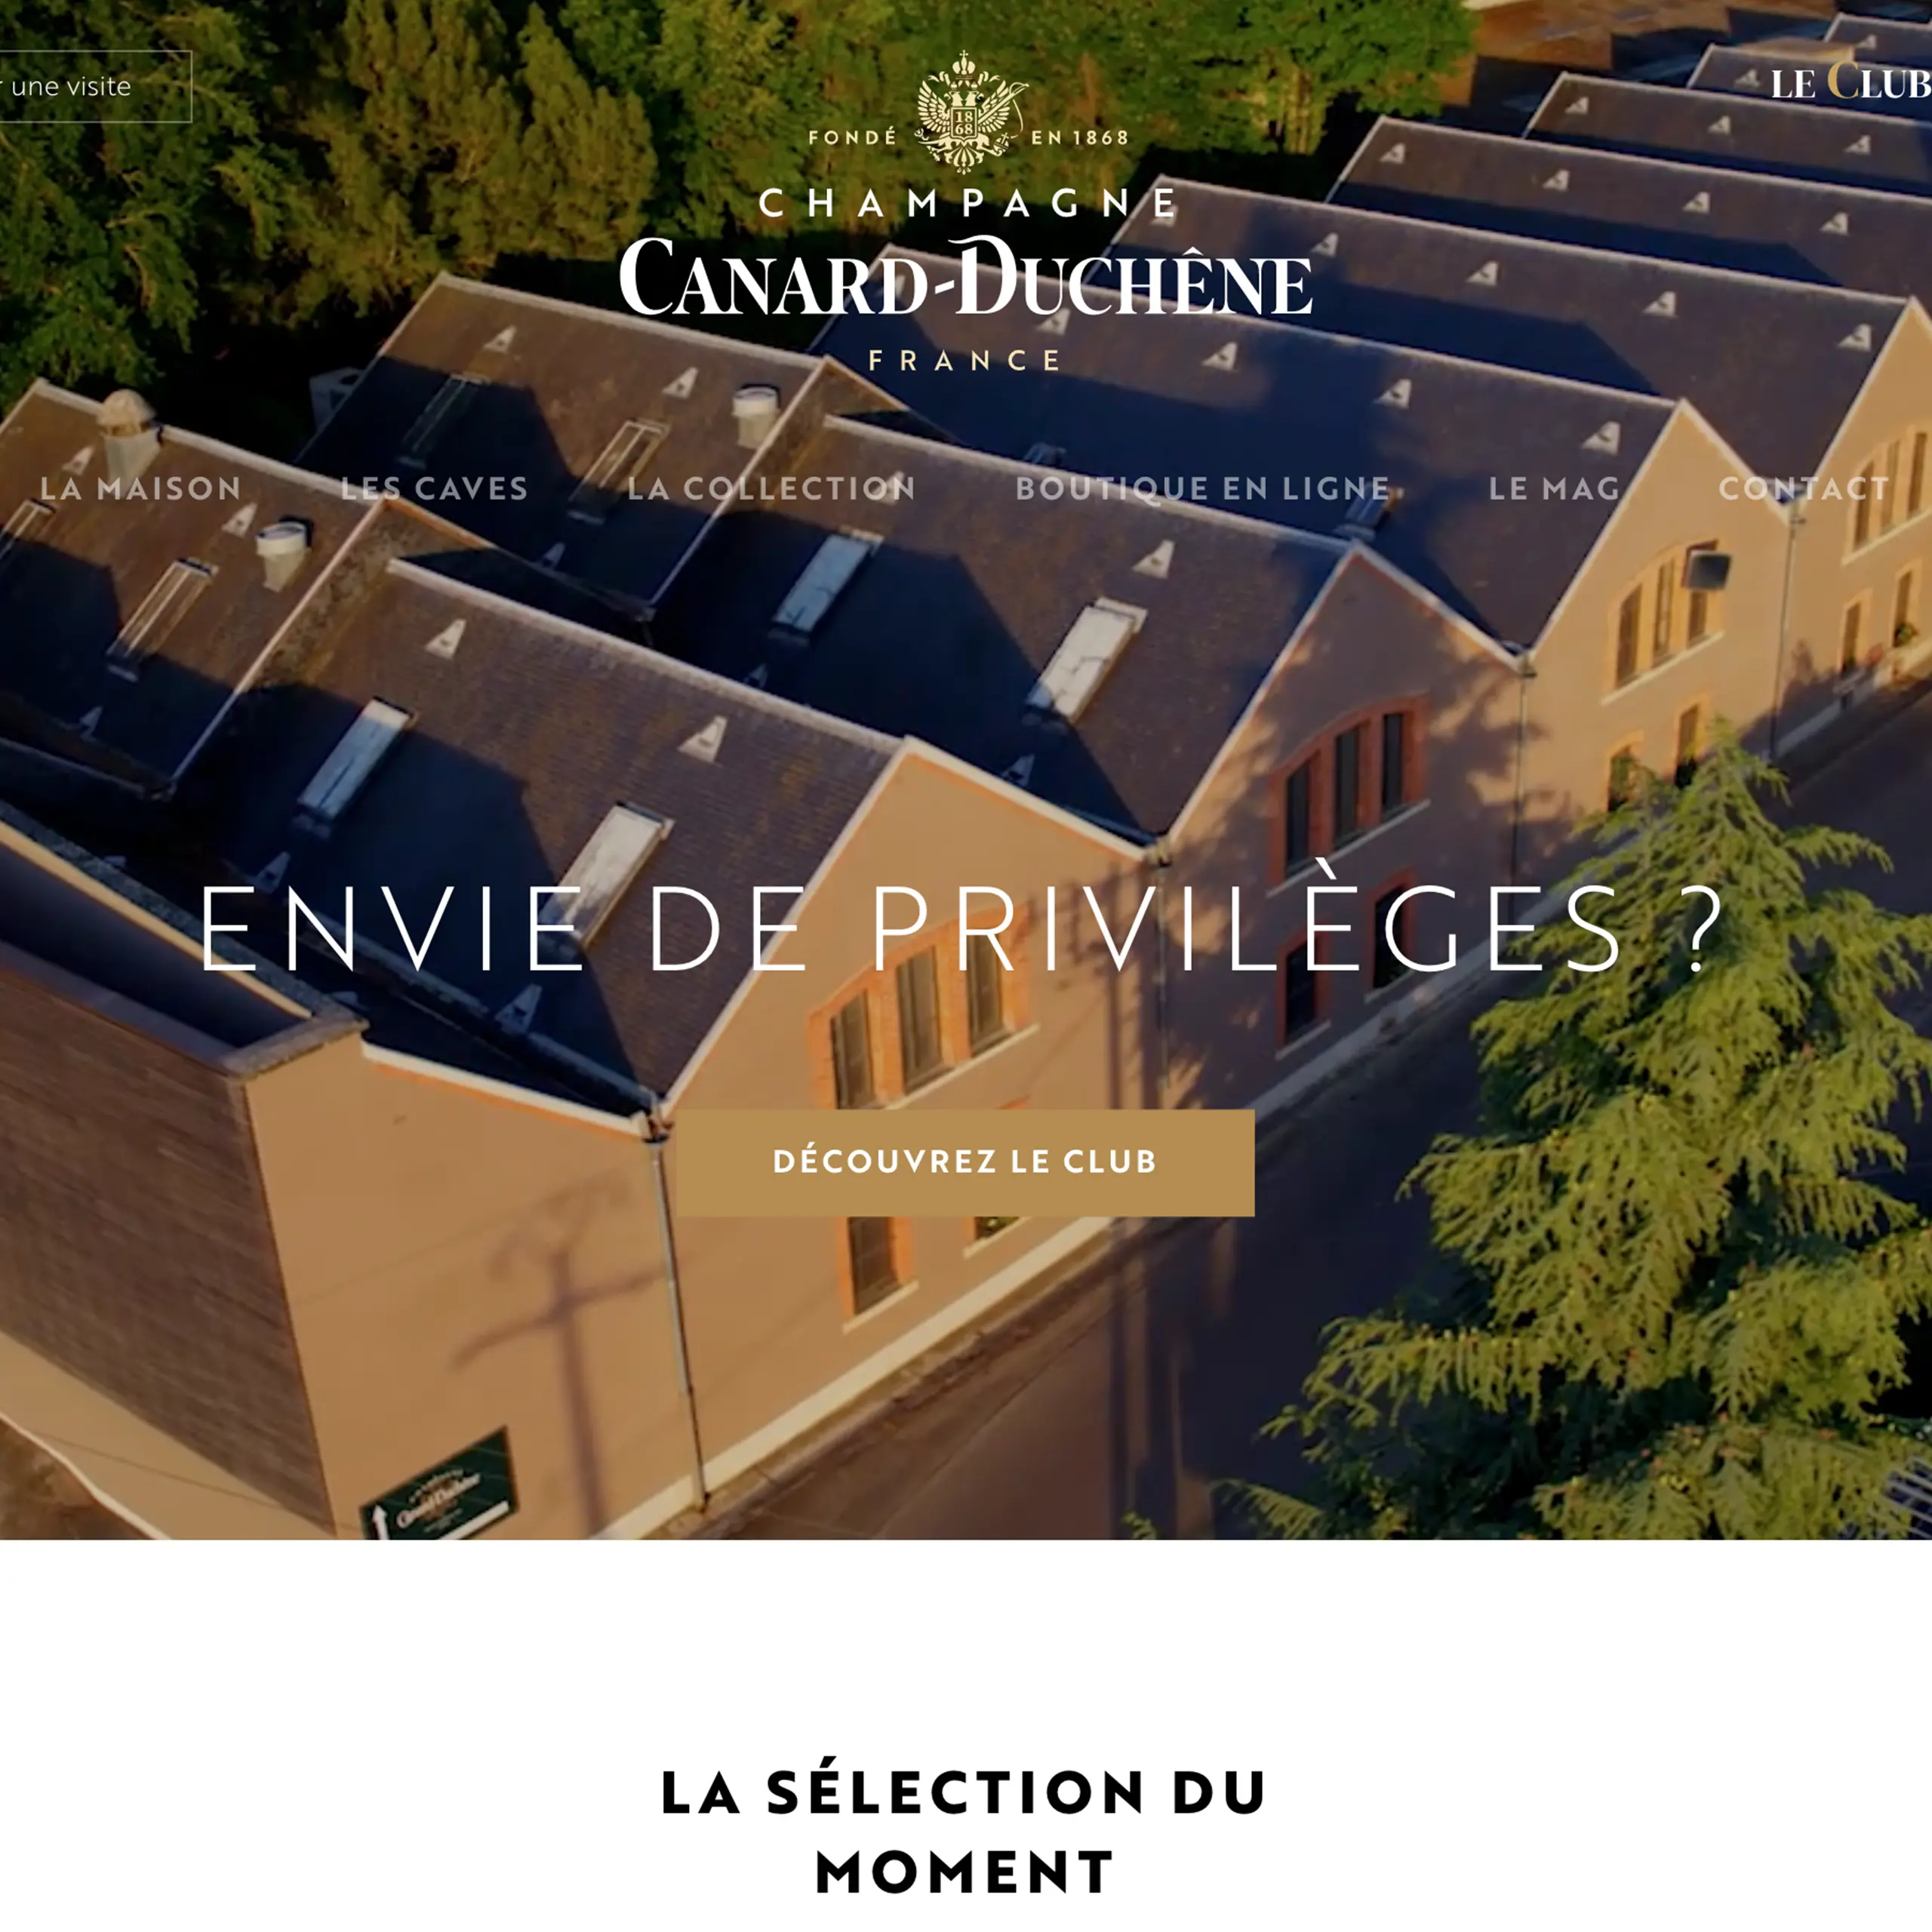 Lilian Barbier : Programme web marketing complet pour les champagnes Canard-Duchêne